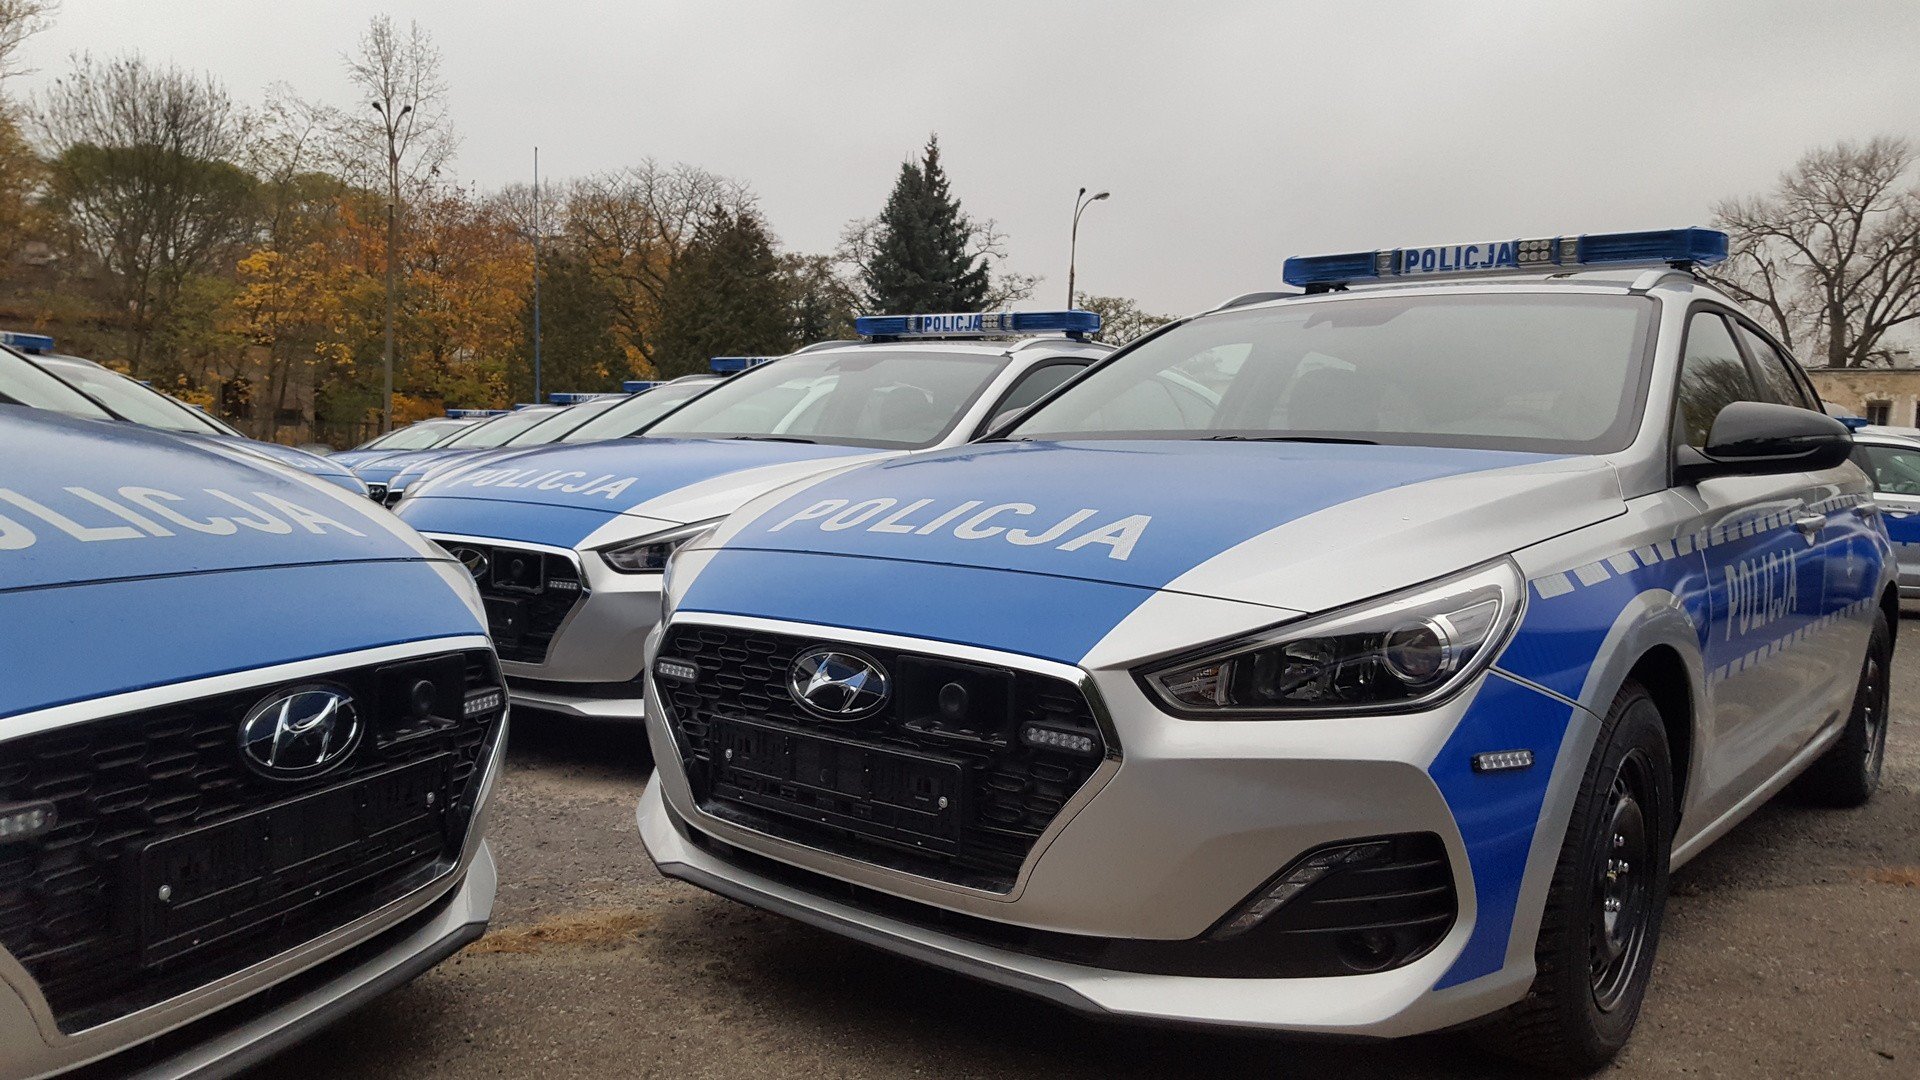 Nowe radiowozy policji Hyundai i30 Wagon. 303 pojazdy